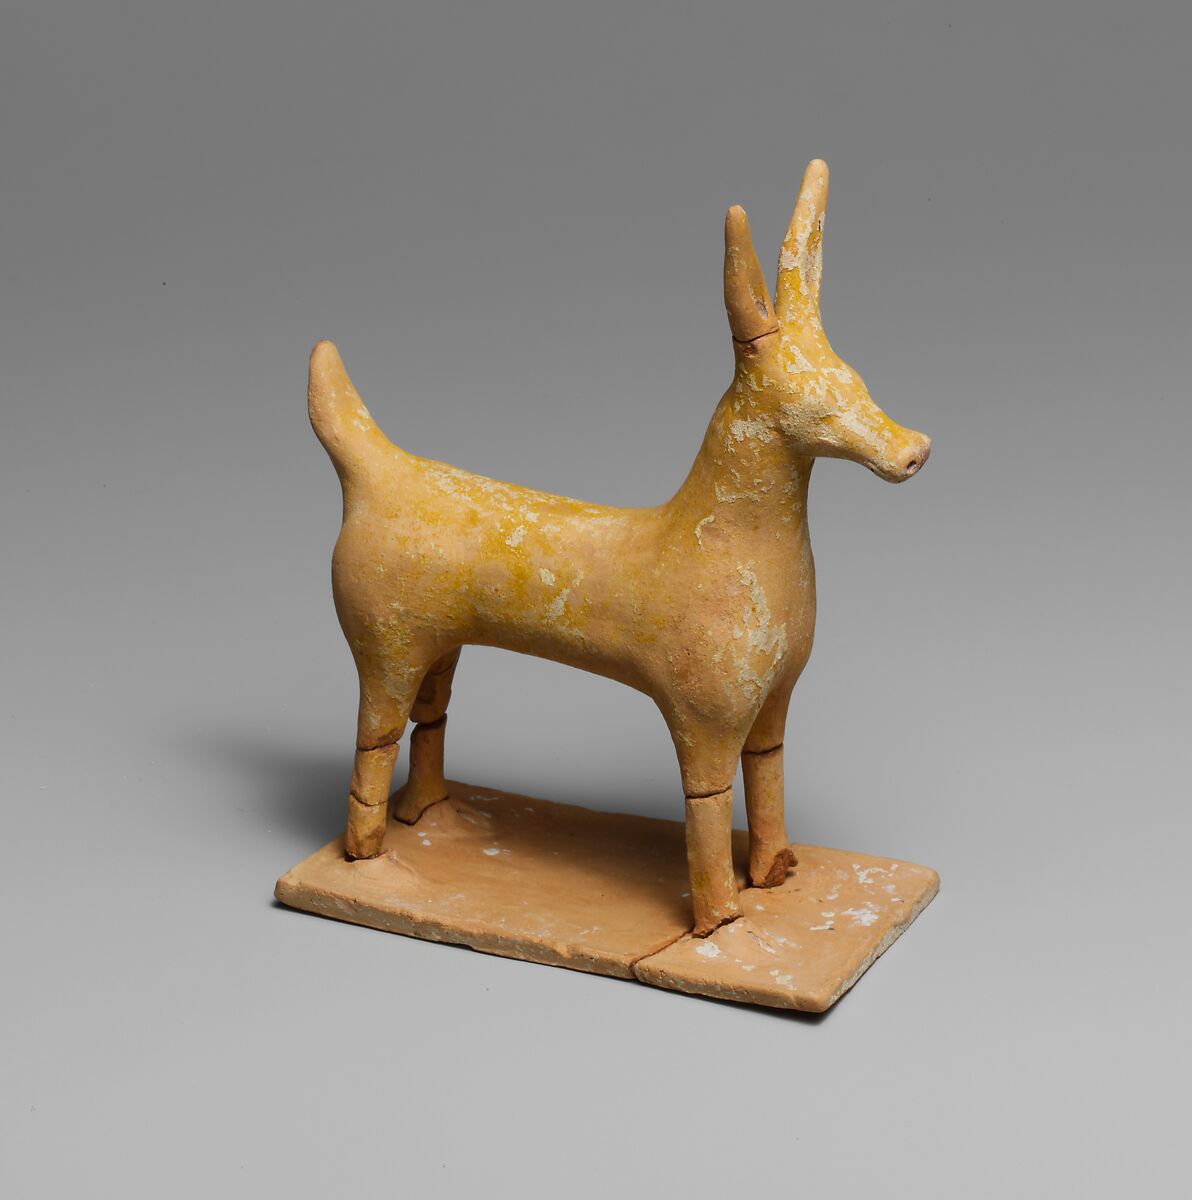 Terracotta statuette of a deer, Terracotta, Greek 